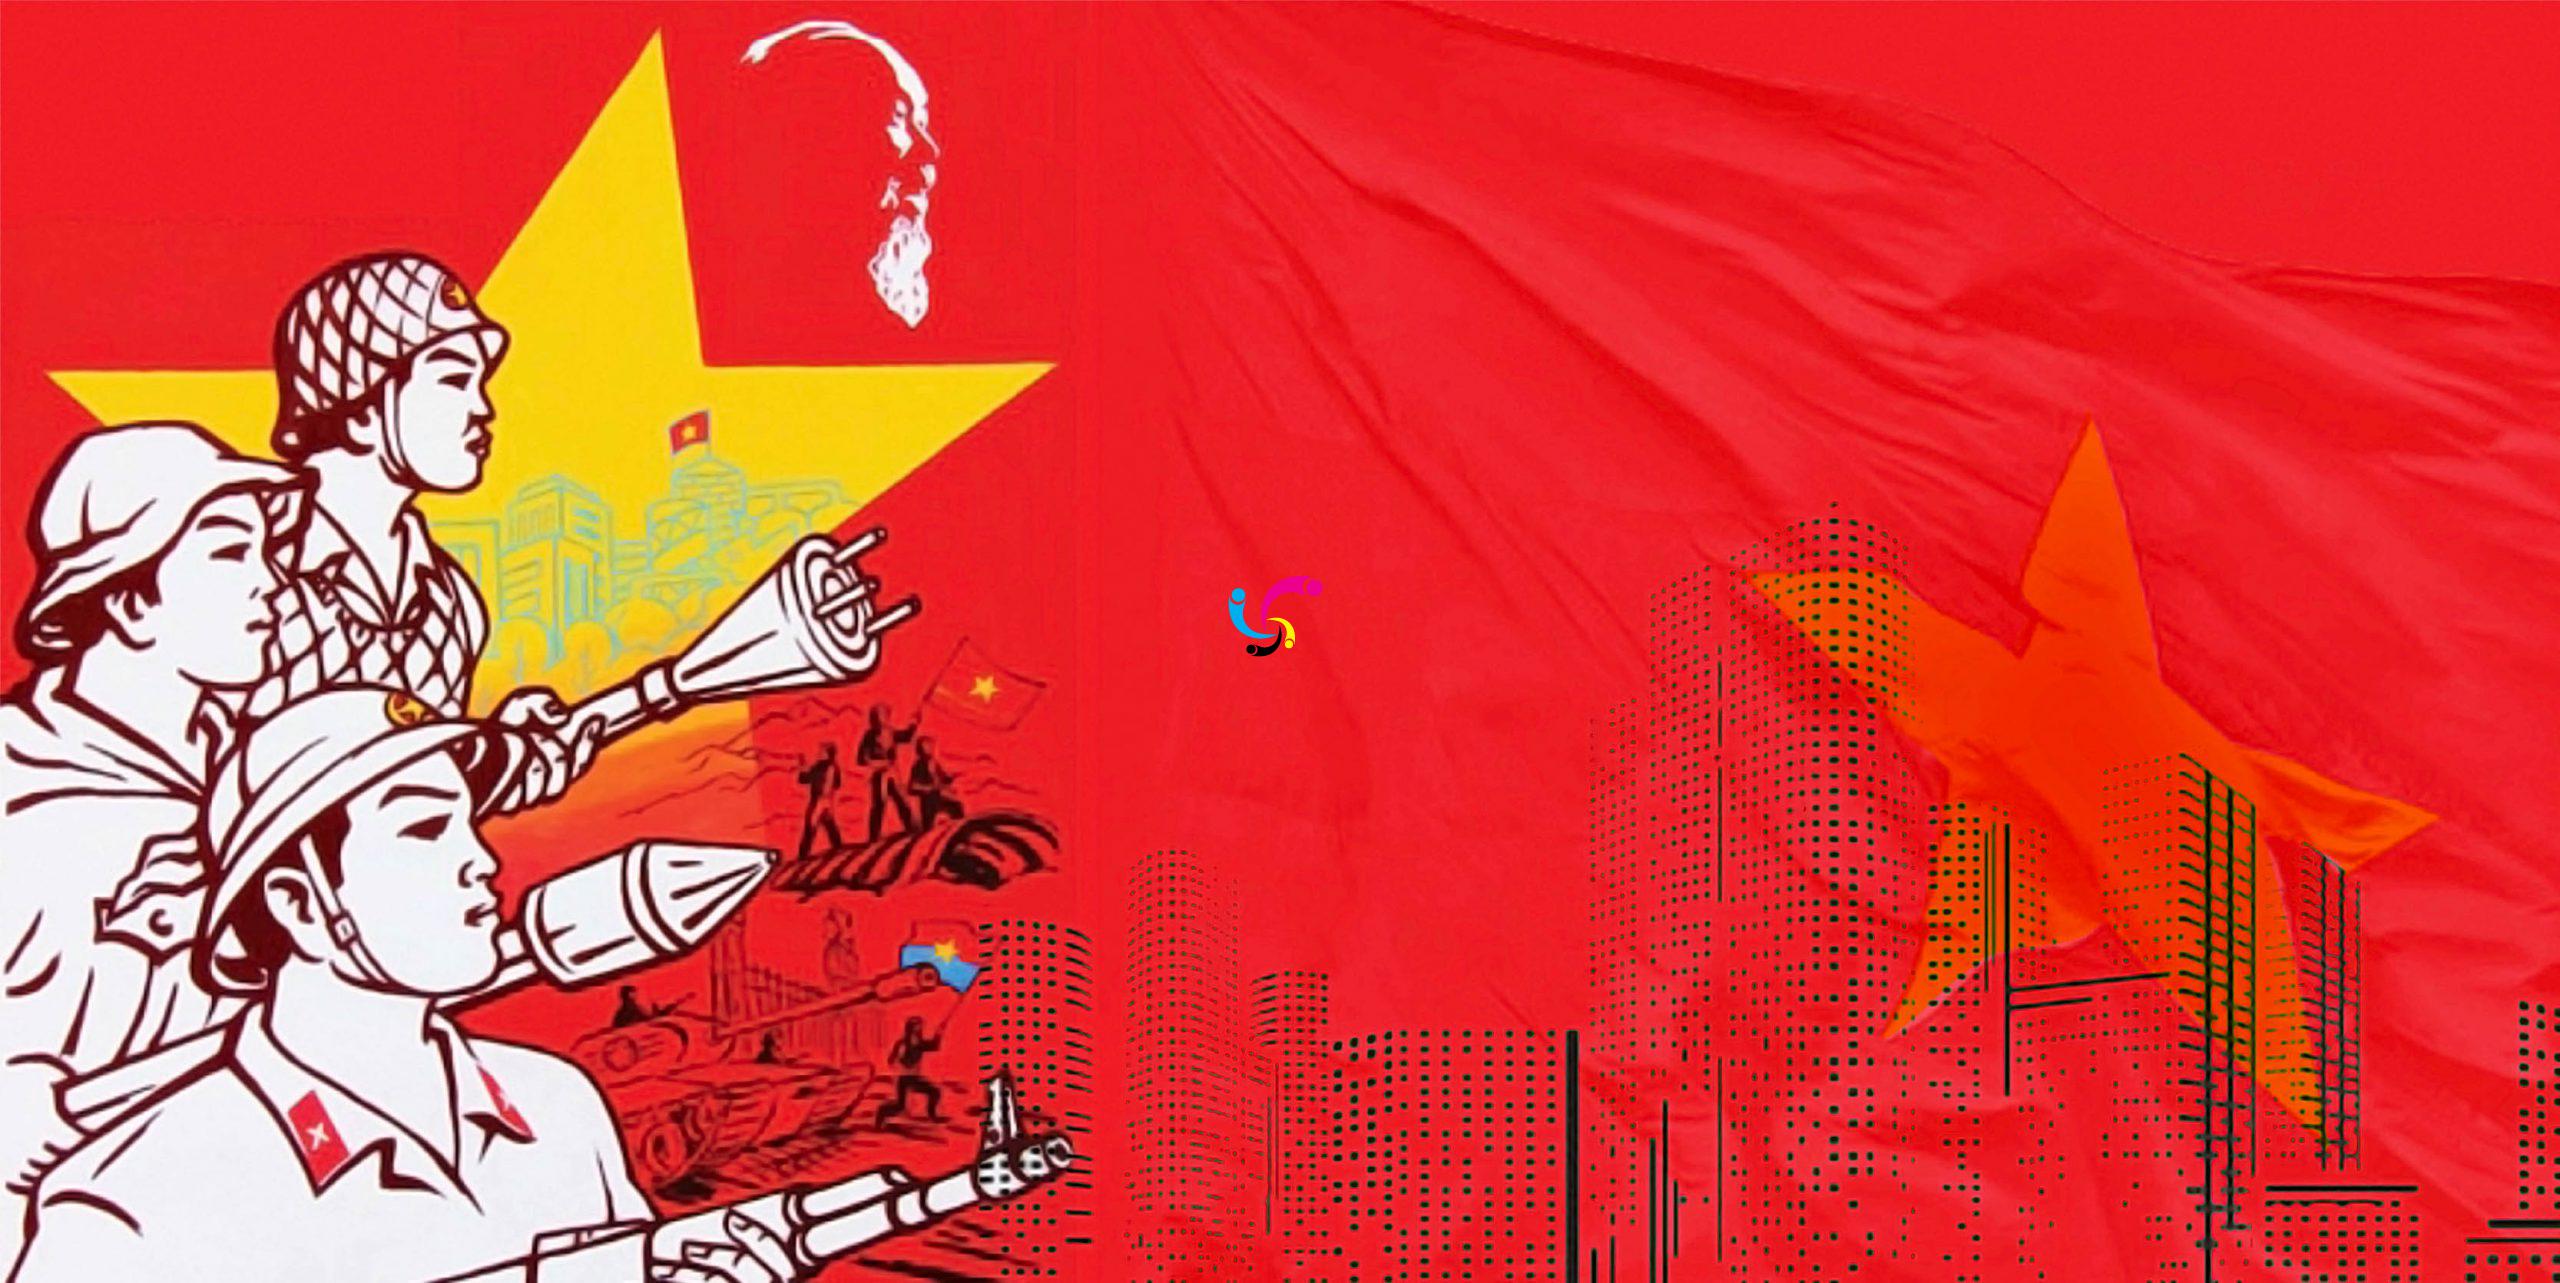 Lá cờ Việt Nam - Một biểu tượng khác của đất nước Việt Nam với màu sắc rực rỡ và ý nghĩa sâu sắc. Nếu bạn muốn hiểu thêm về lá cờ Việt Nam và tìm kiếm những hình ảnh đẹp để sử dụng, hãy cùng tìm hiểu thêm với bức ảnh của chúng tôi. Bộ sưu tập là sự kết hợp hoàn hảo giữa sắc màu đẹp và chi tiết tinh tế.